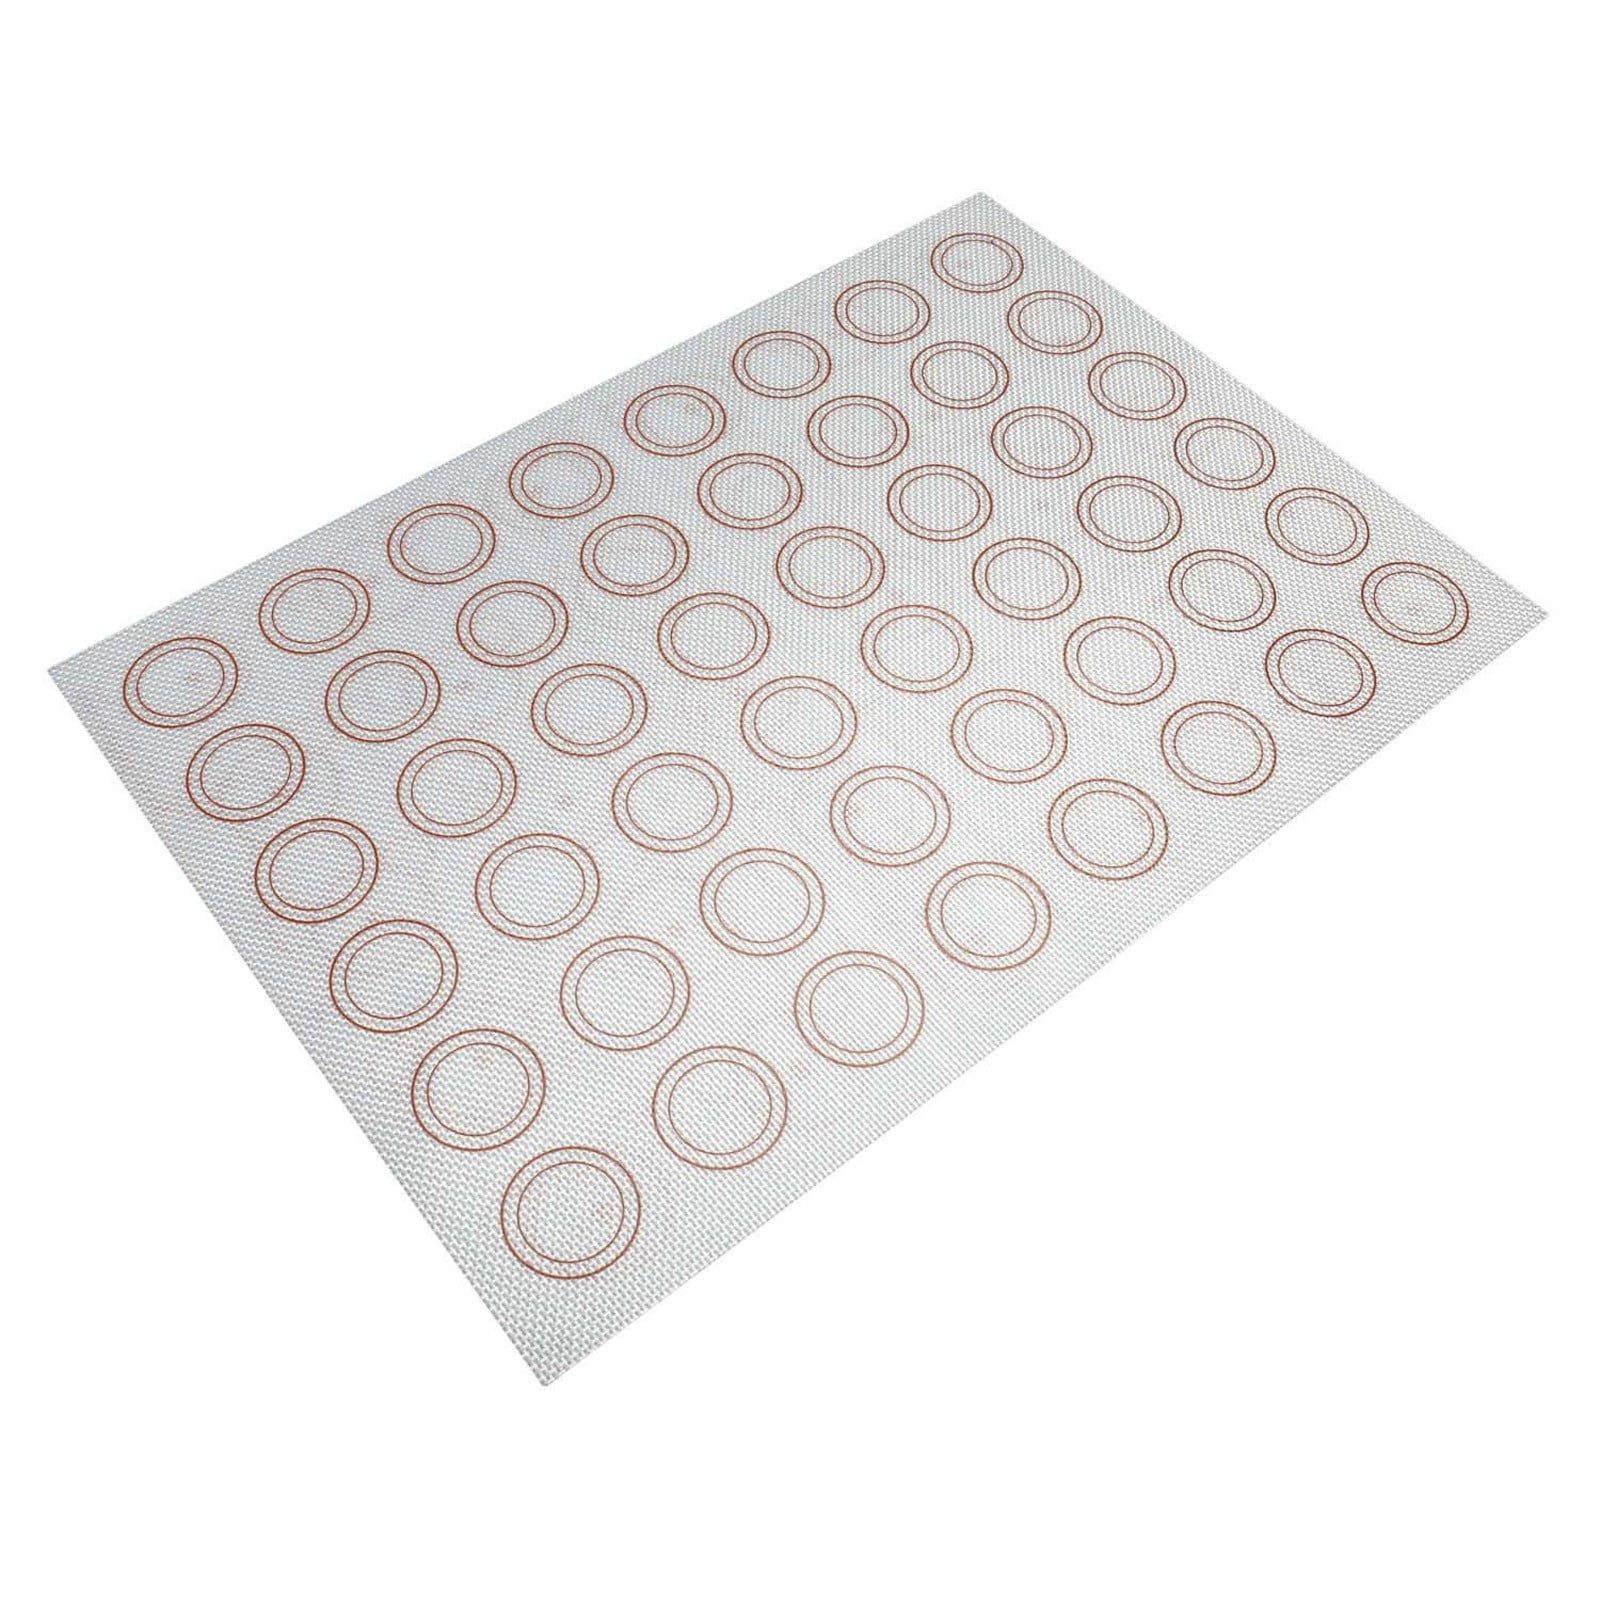 LotFancy Macaron Silicone Baking Mat, 16.5 x 11.5 in, 2Pcs Reusable Half Baking  Sheet, BPA Free 